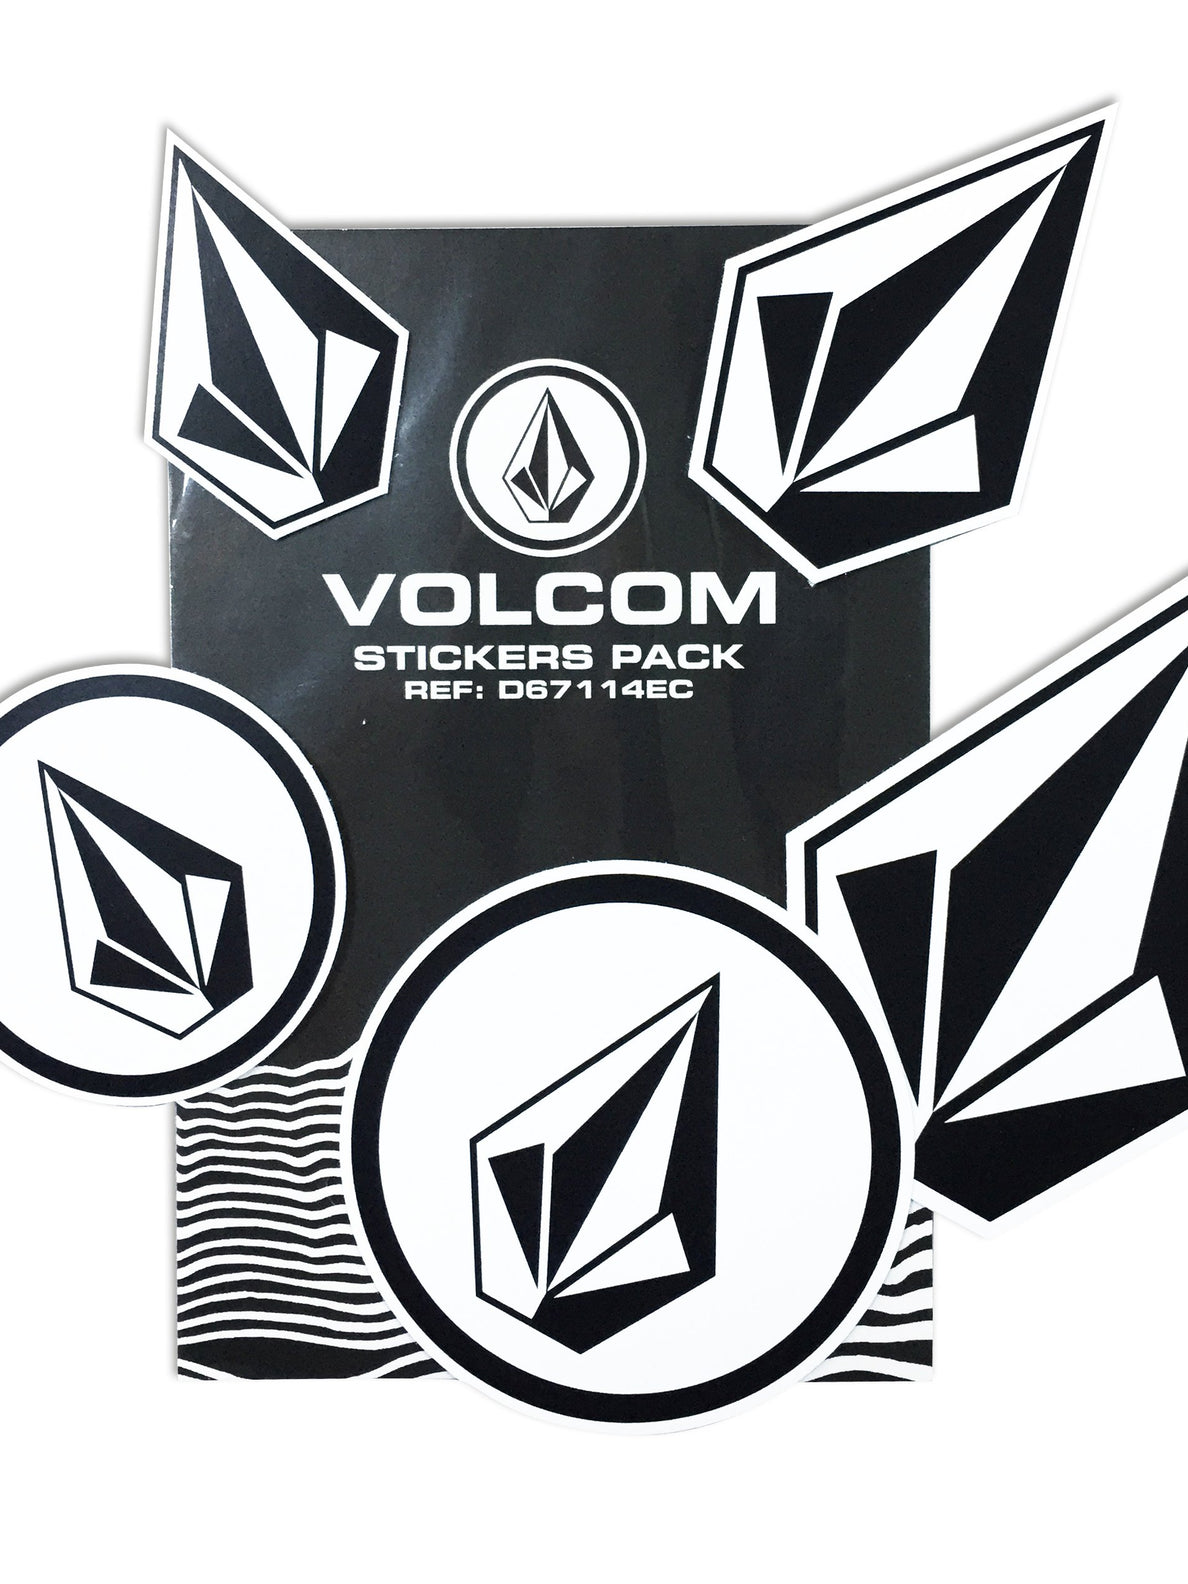 Conjunto de 5 stickers Volcom